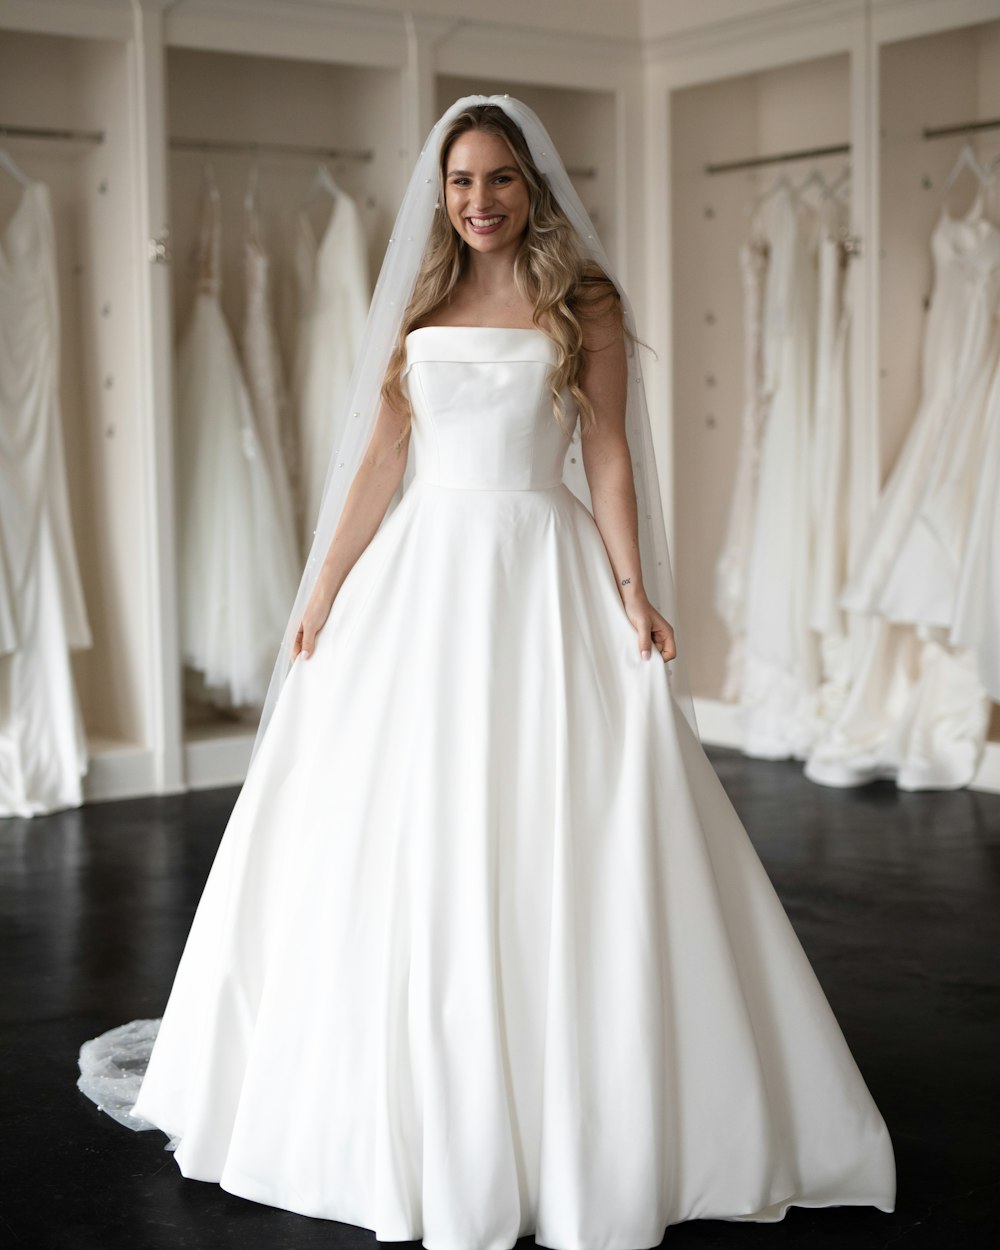 Eine Frau im Brautkleid steht vor einem Kleiderregal